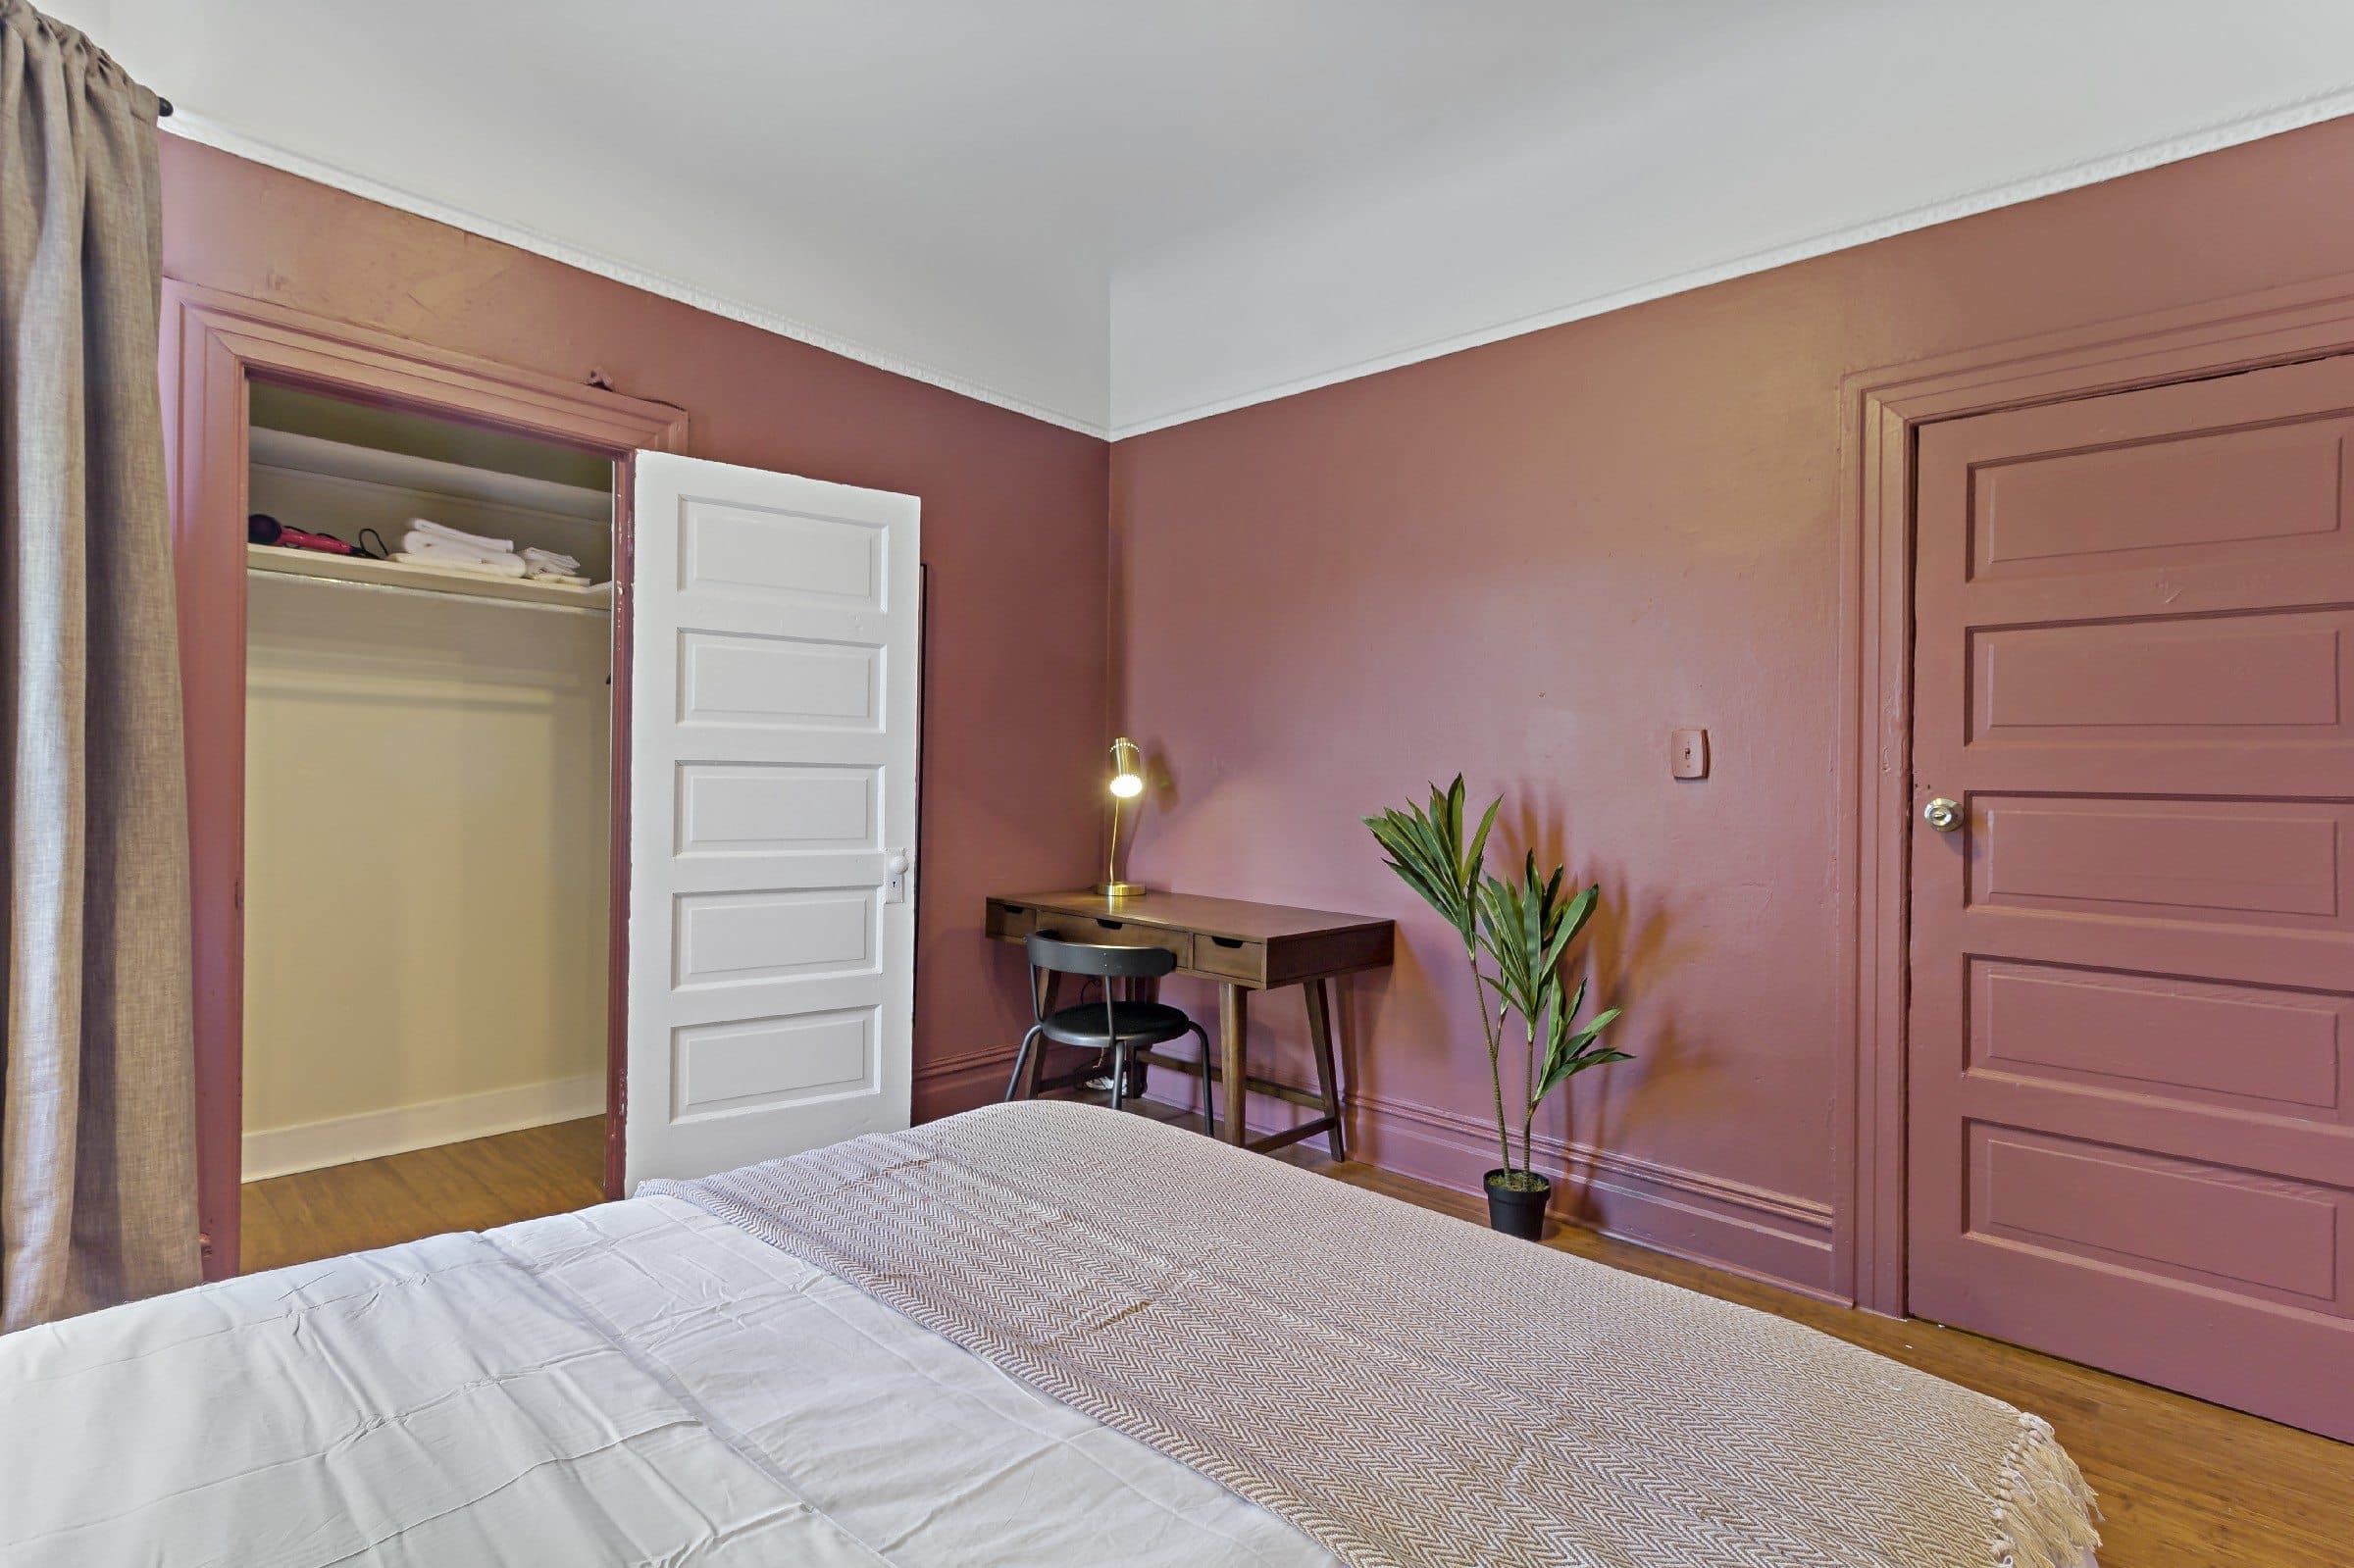 Photo 16 of #903: Queen Bedroom C at June Homes